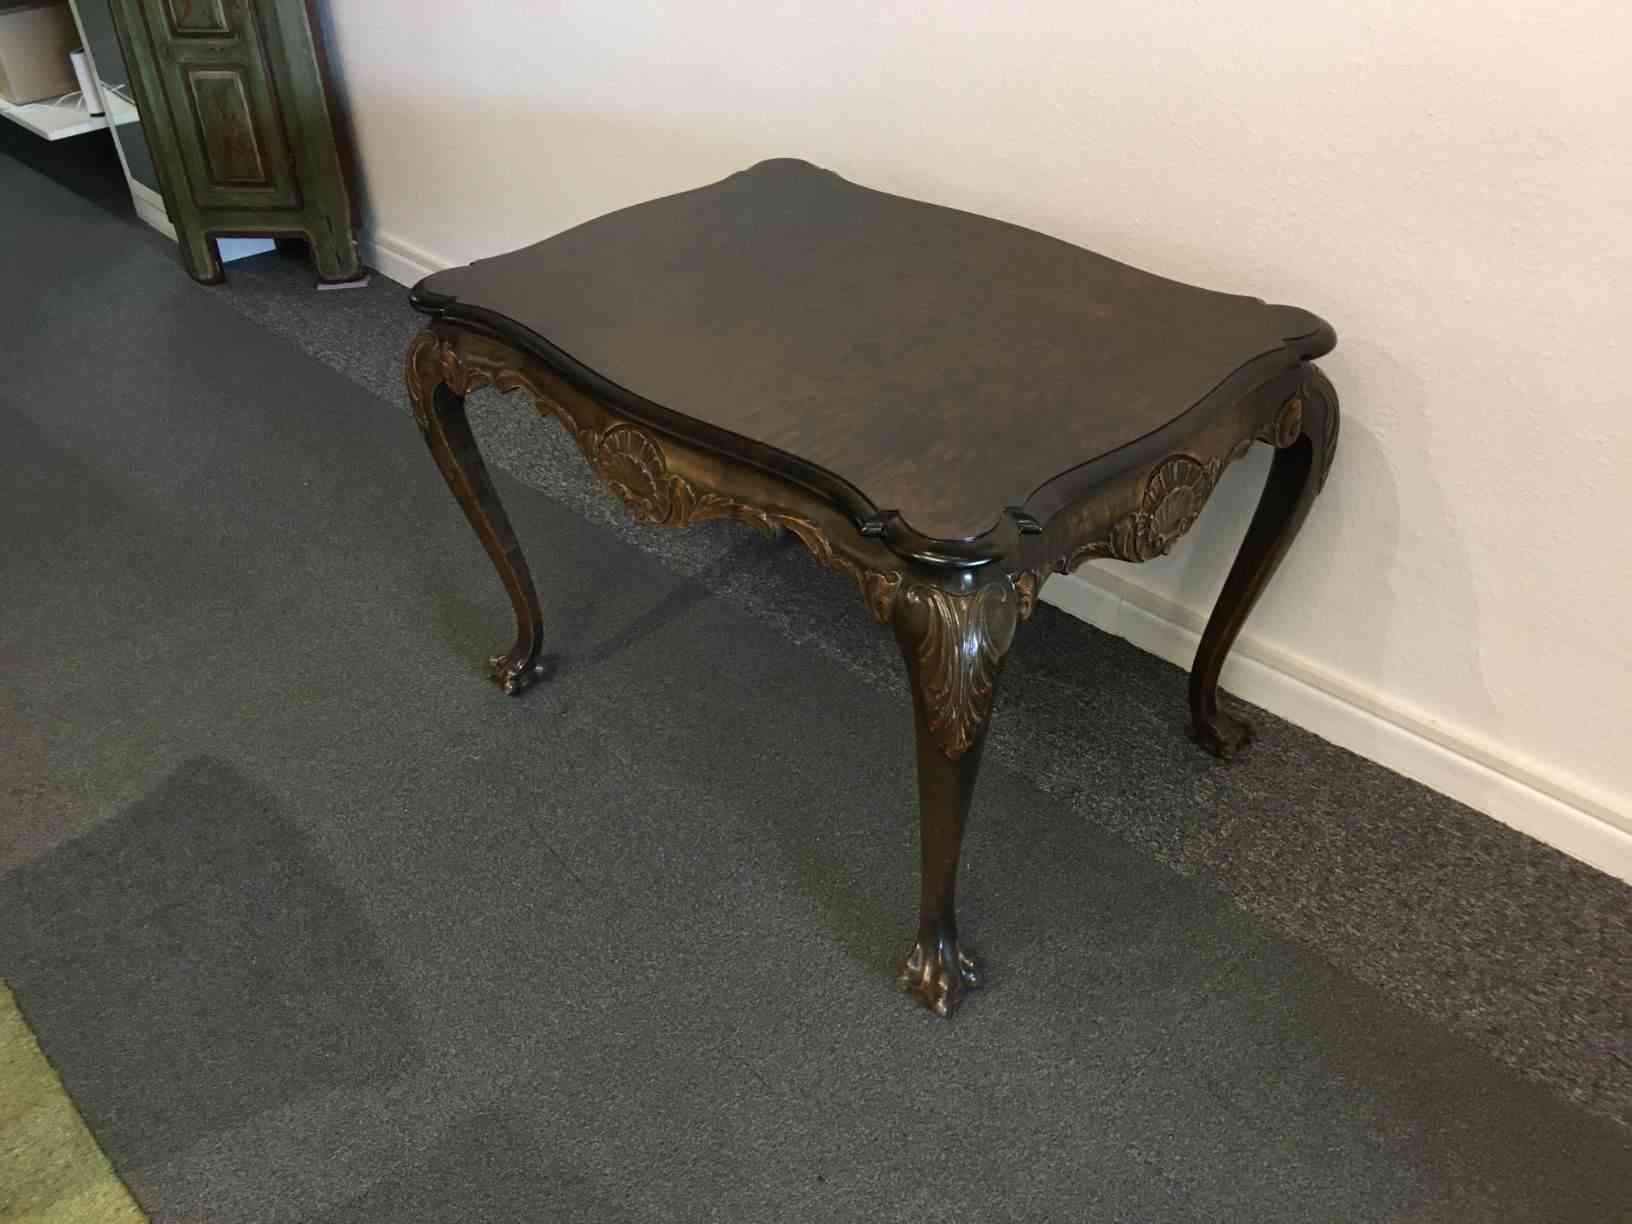 Salonbord med cabrioleben fra begyndelsen af 1900 tallet. Salonmøbler blev brugt af det bedre borgerskab i slutningen af 1800 tallet og begyndelsen af 1900 tallet. Dette bord er nænsom restaureret til perfekt stand. Måler 84 X 64 cm. Pris: 4.600, - Kr.